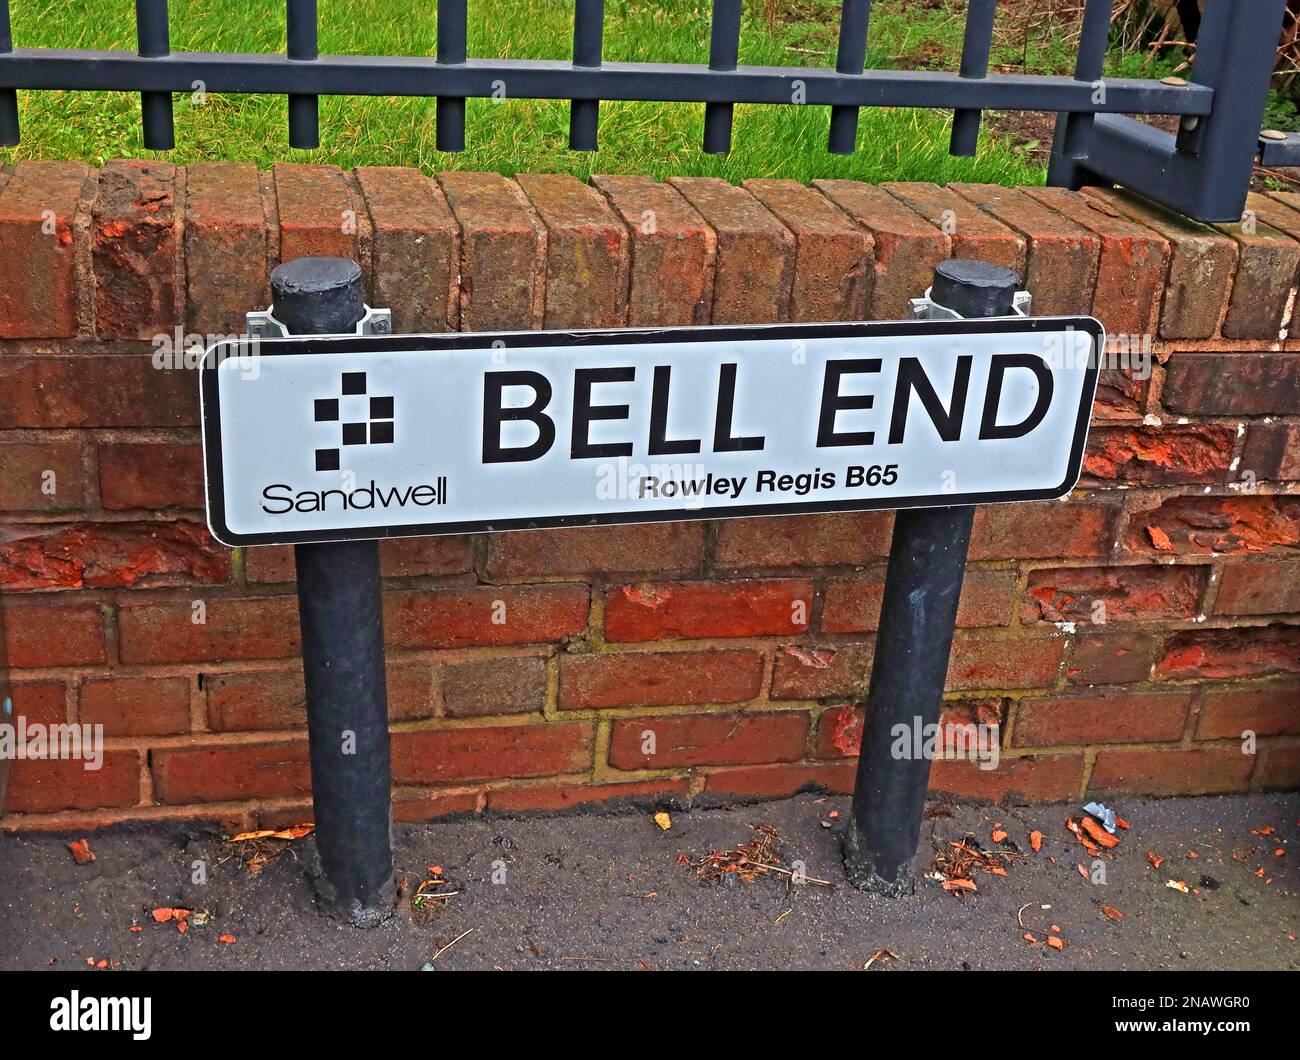 Bell End, panneau routier à Rowley Village, Rowley Regis, Sandwell, West Midlands, Angleterre, ROYAUME-UNI, B65 9LX Banque D'Images